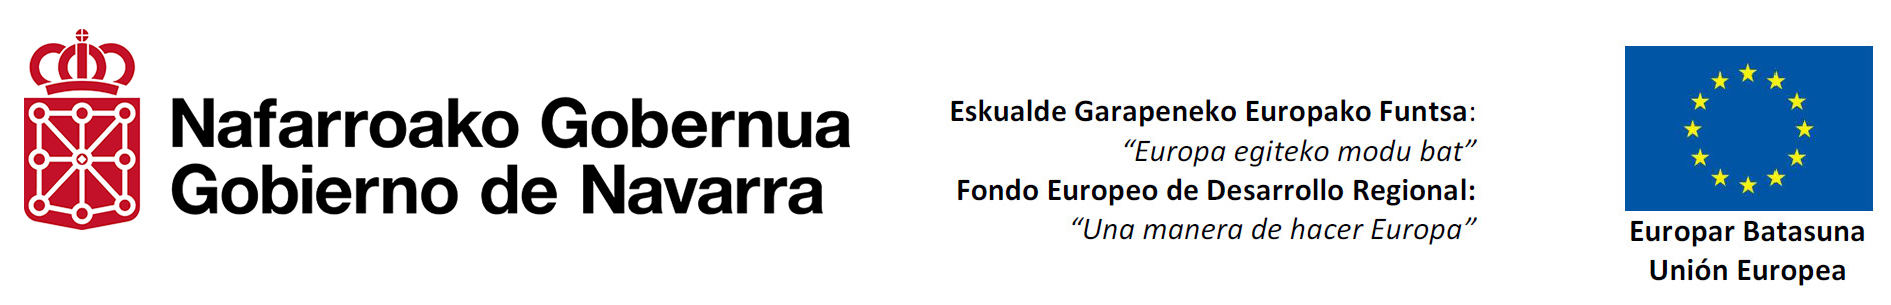 Logotipo UnionEuropea.